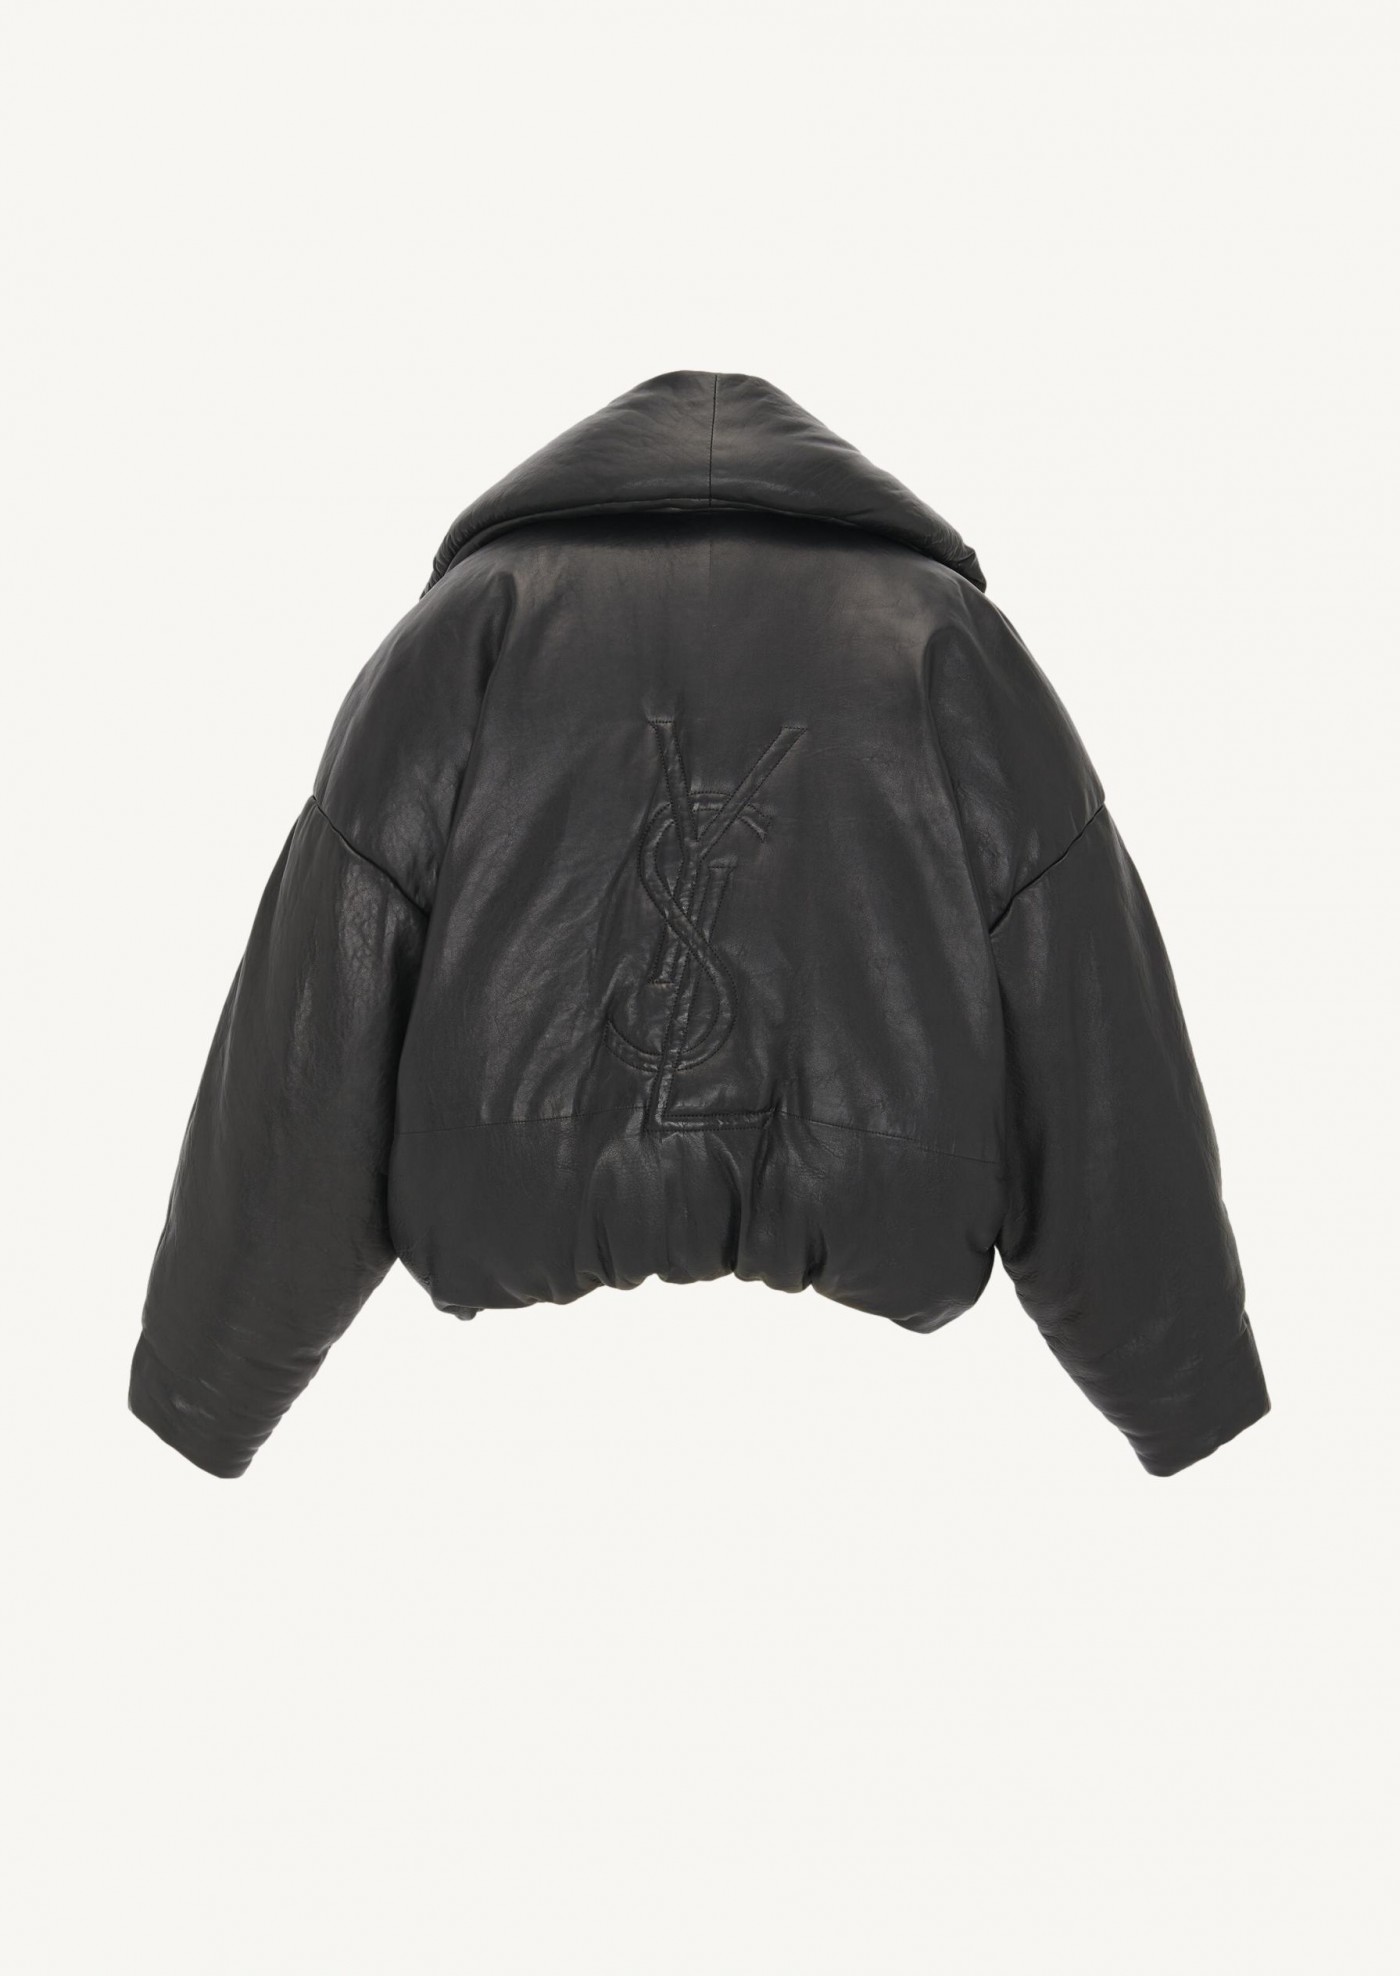 Cassandre down jacket in lambskin leather